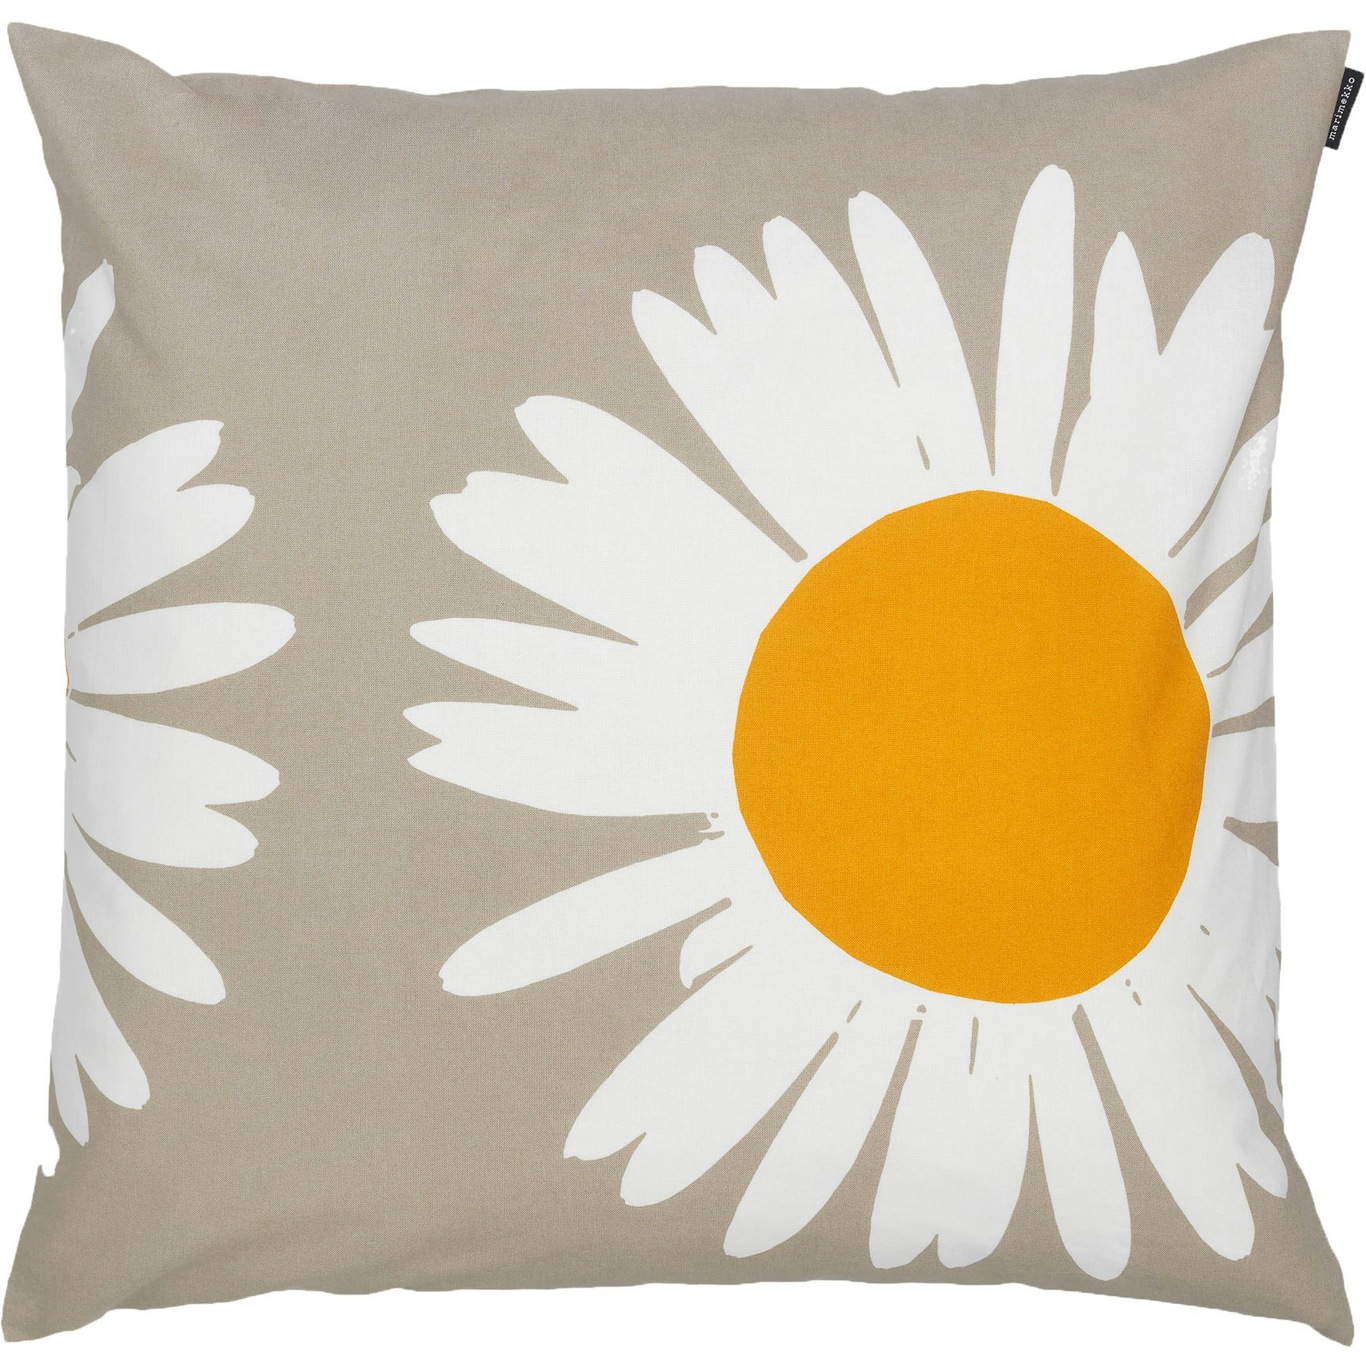 Auringonkukka Cushion Cover, 50x50 cm - Marimekko @ 